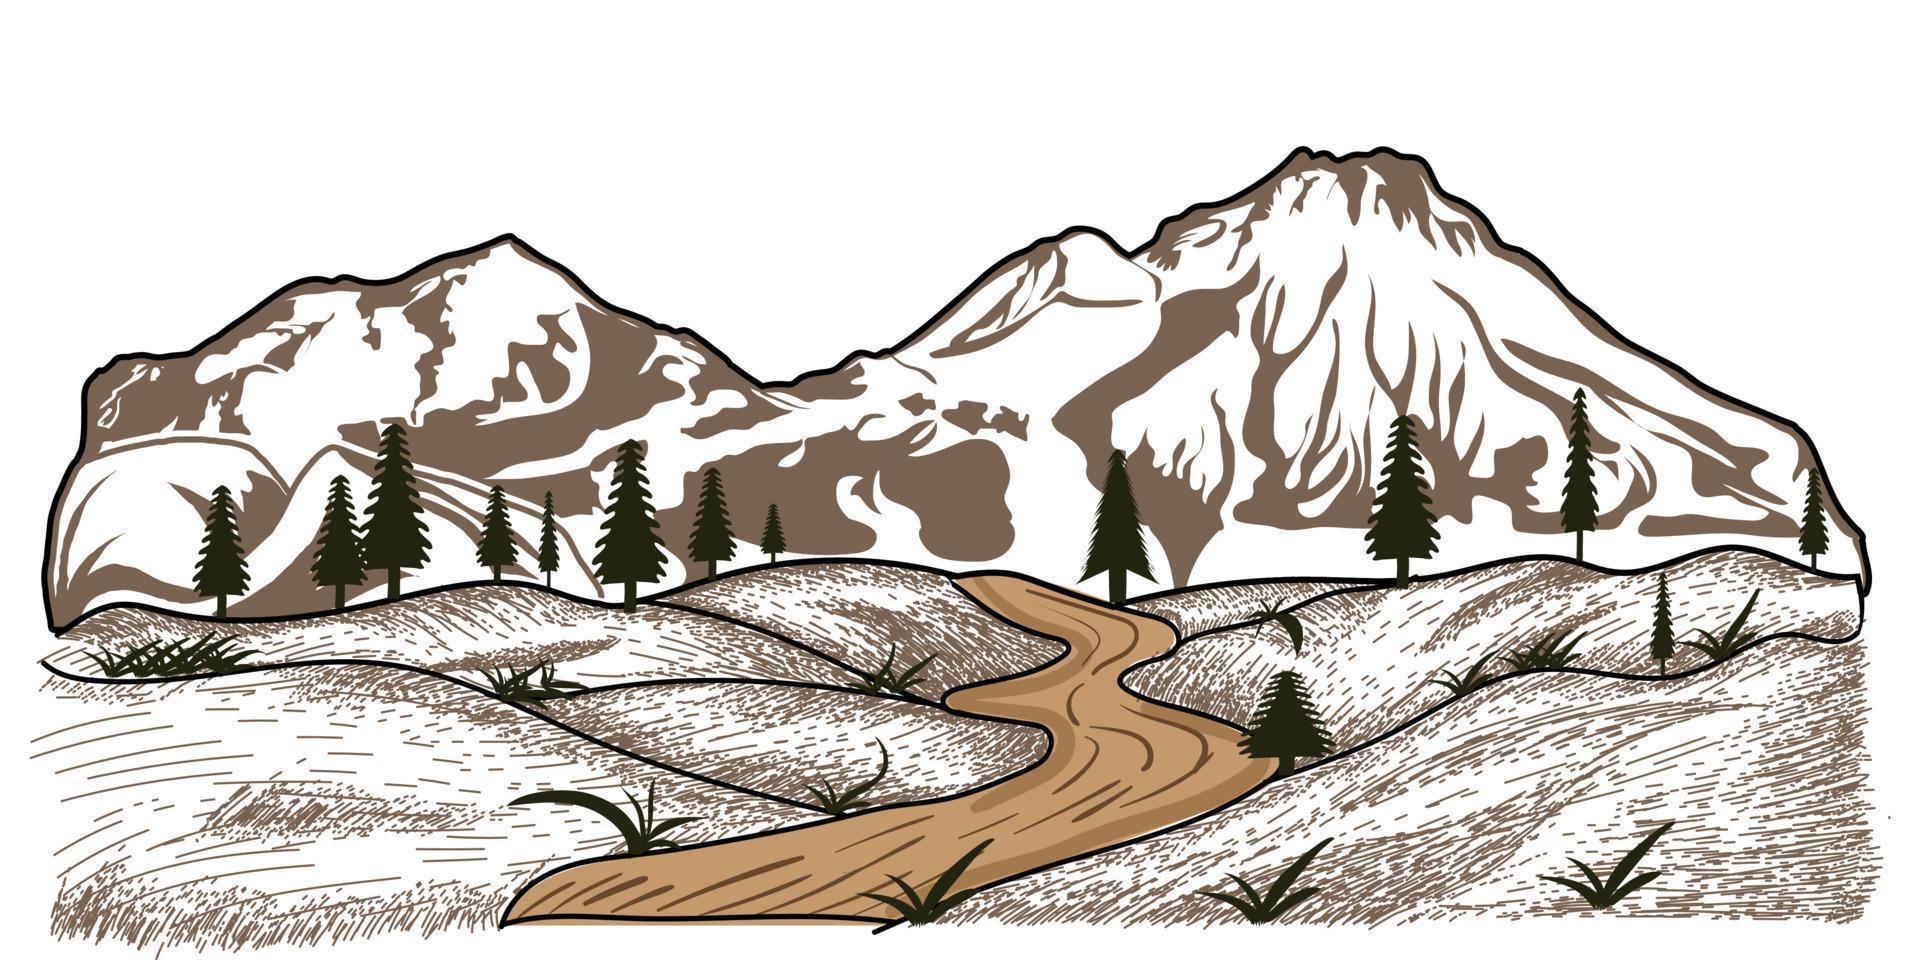 camping illustratie, berg landschap, schetsen stijl voor buitenshuis avontuur illustratie vector